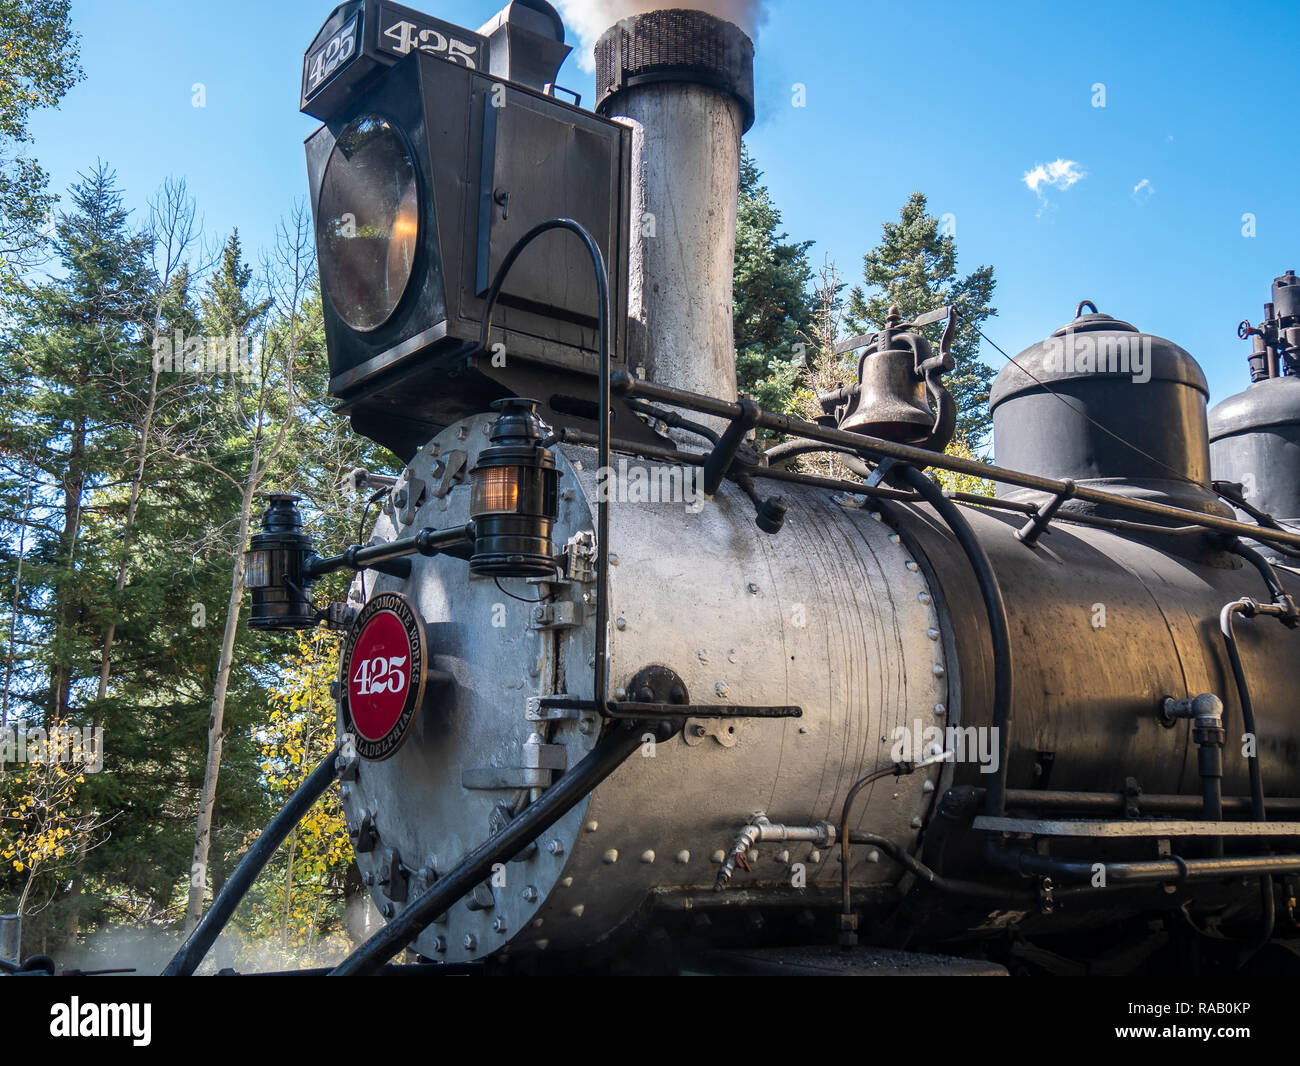 Engine #425, Cumbres & Toltec Scenic Railroad, Chama, New Mexico Stock ...